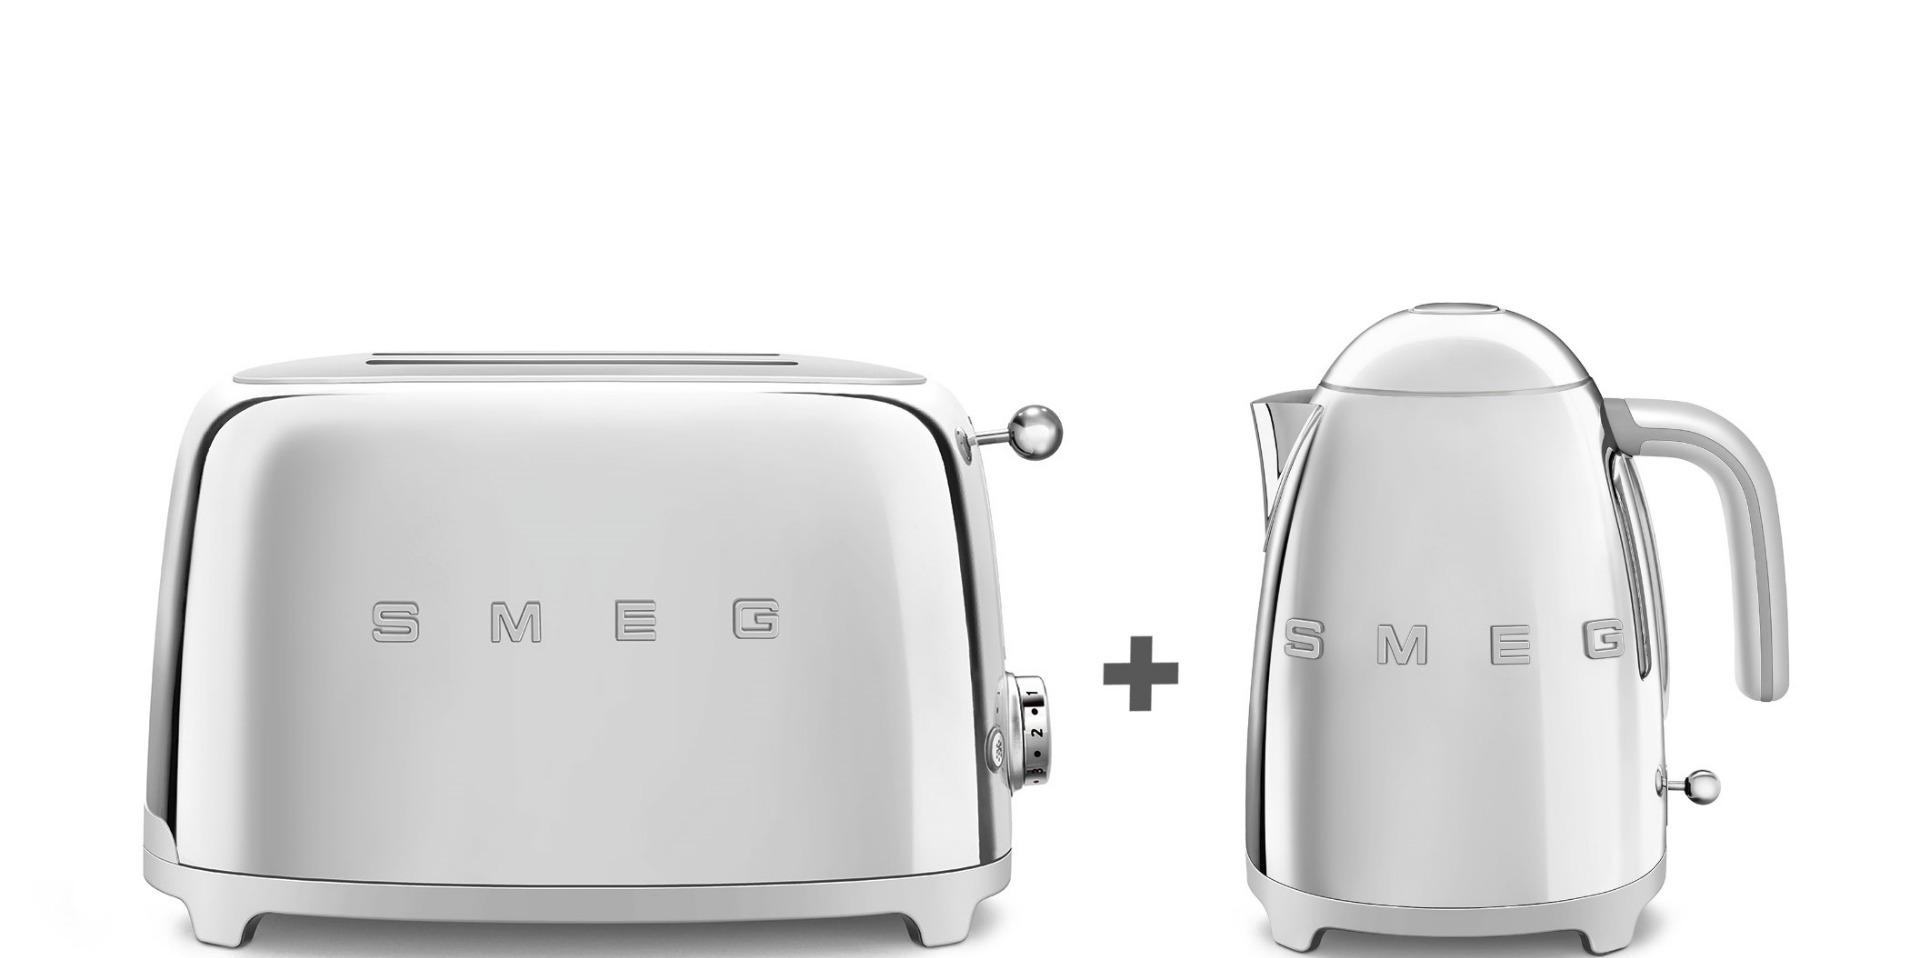 توستر كهربائي بشريحتين 950 واط وغلاية ماء 1.7 لتر 3000 واط عرض سميج ريترو أبيض Smeg Bundle Offer 2 Slice Toaster + Kettle